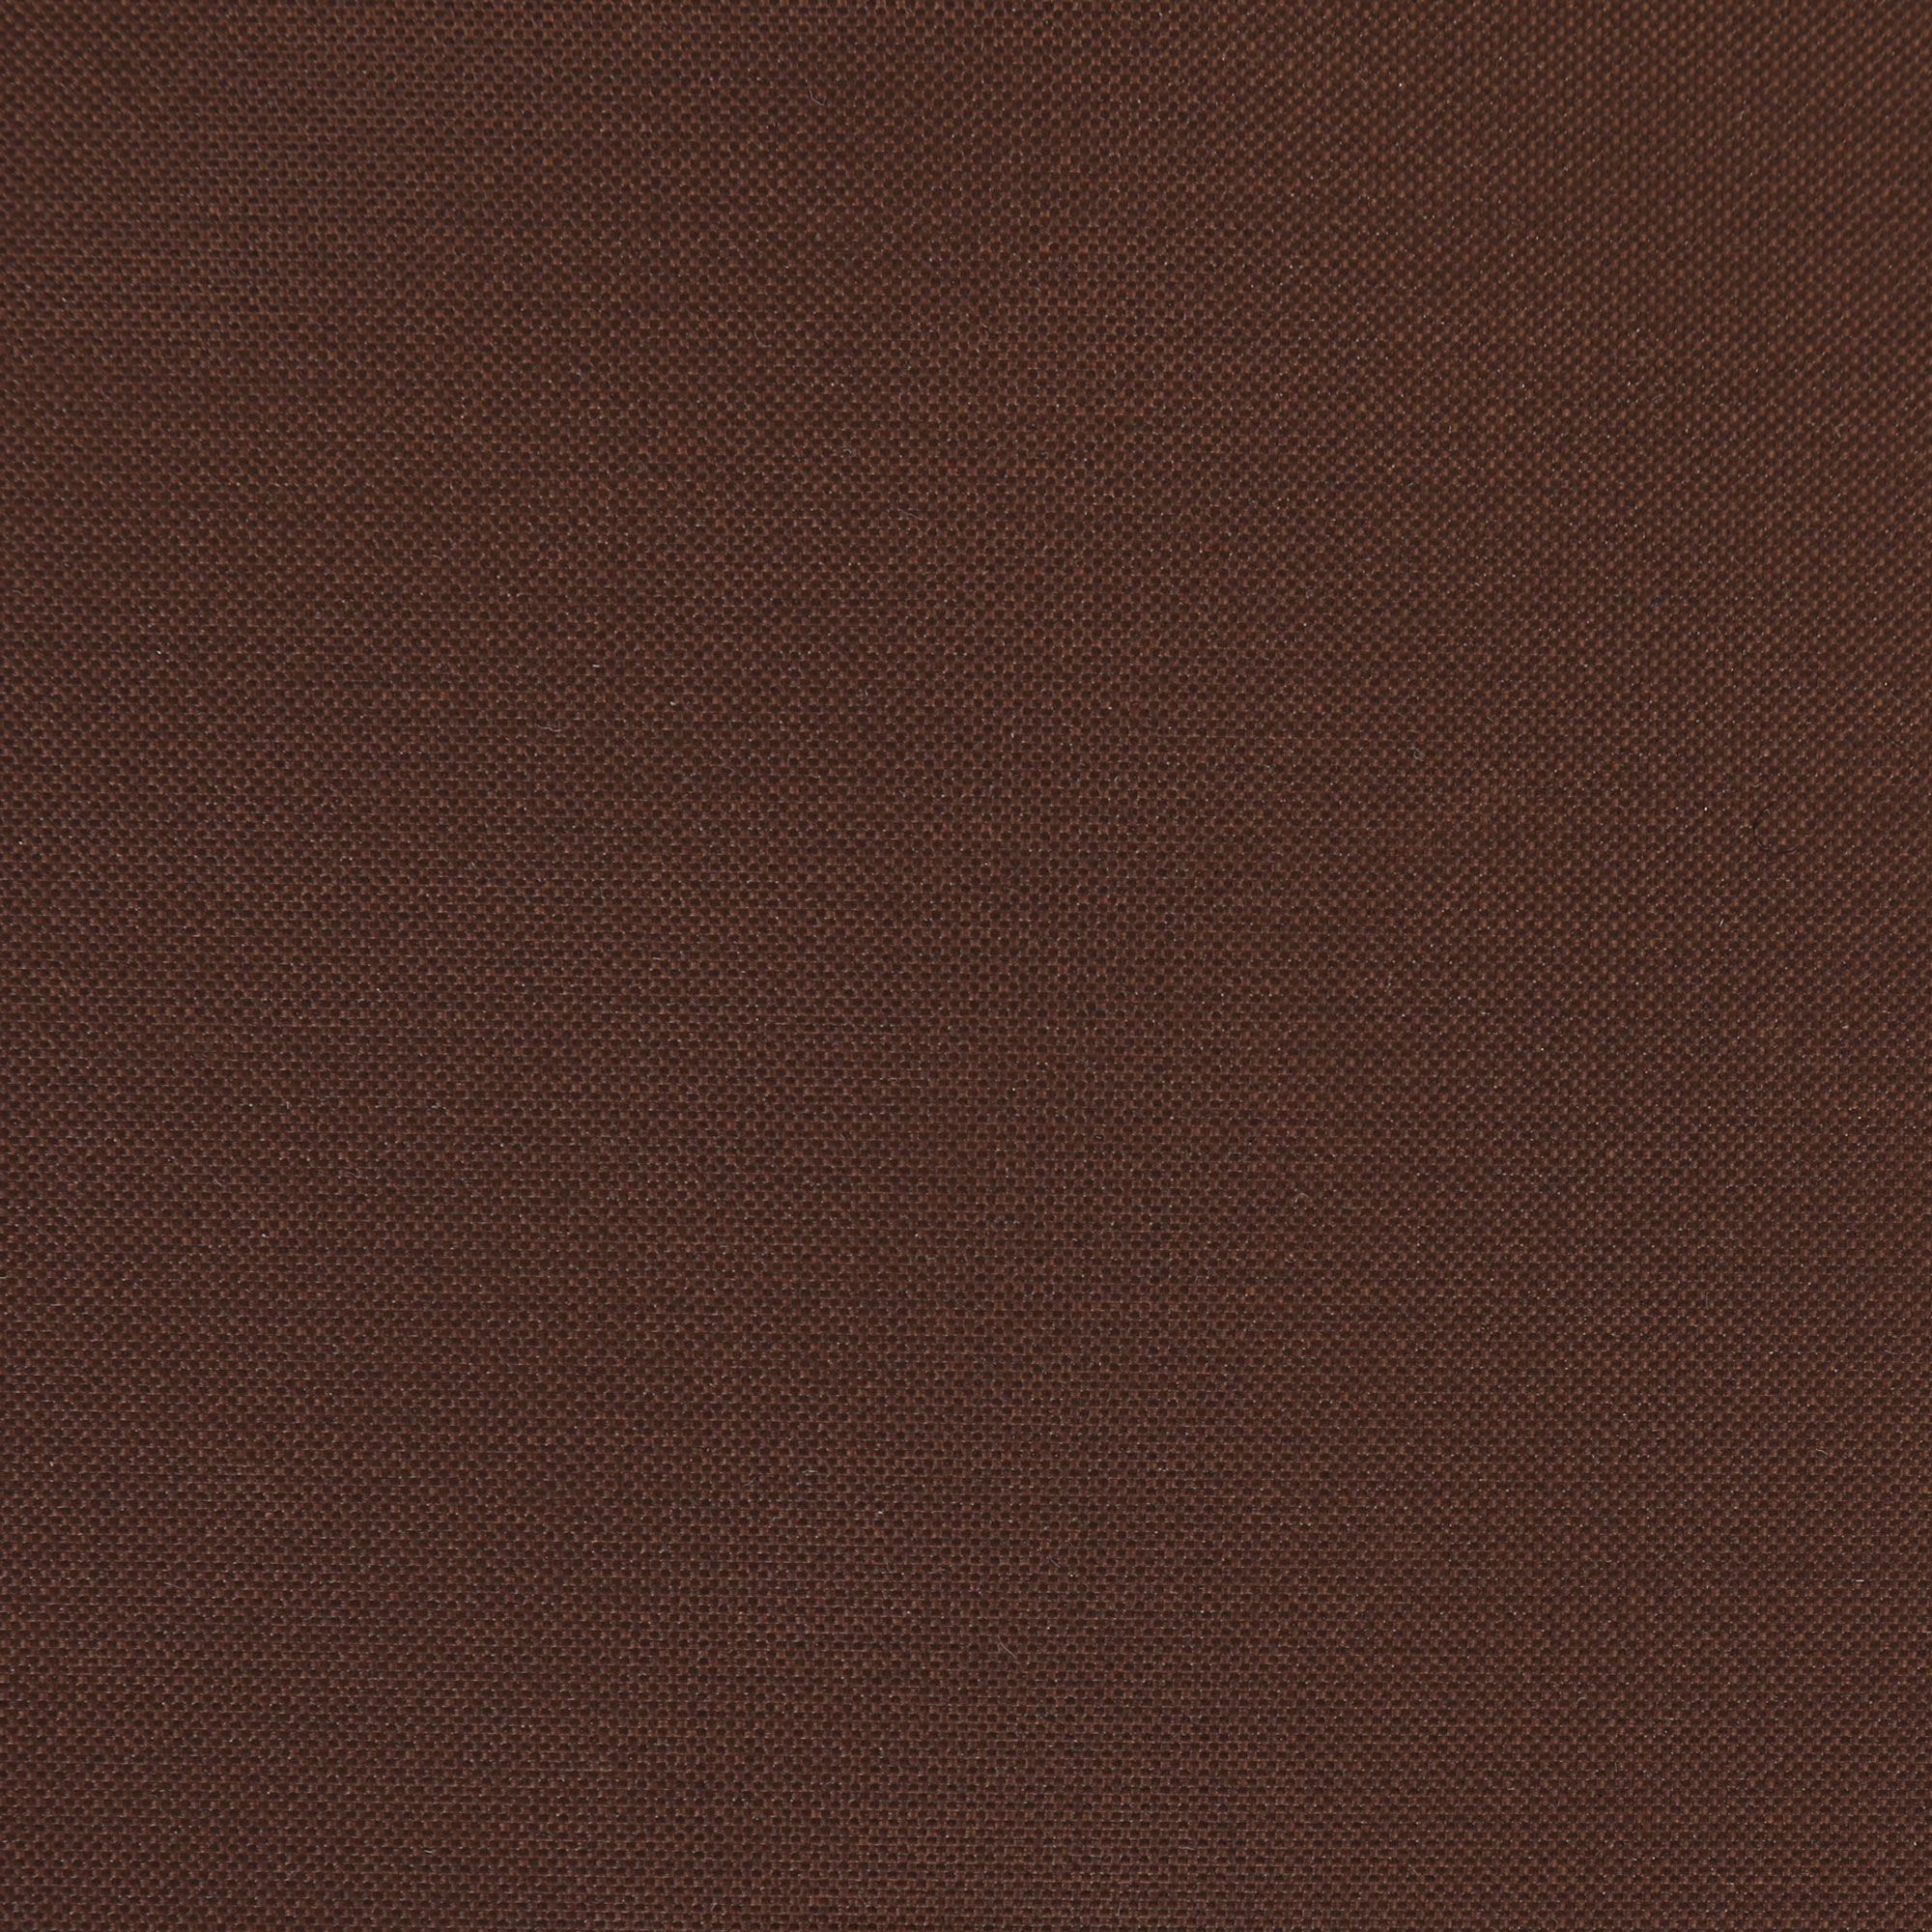 Чеxол для стола Profgarden 125x70x60 см, цвет коричневый - фото 5